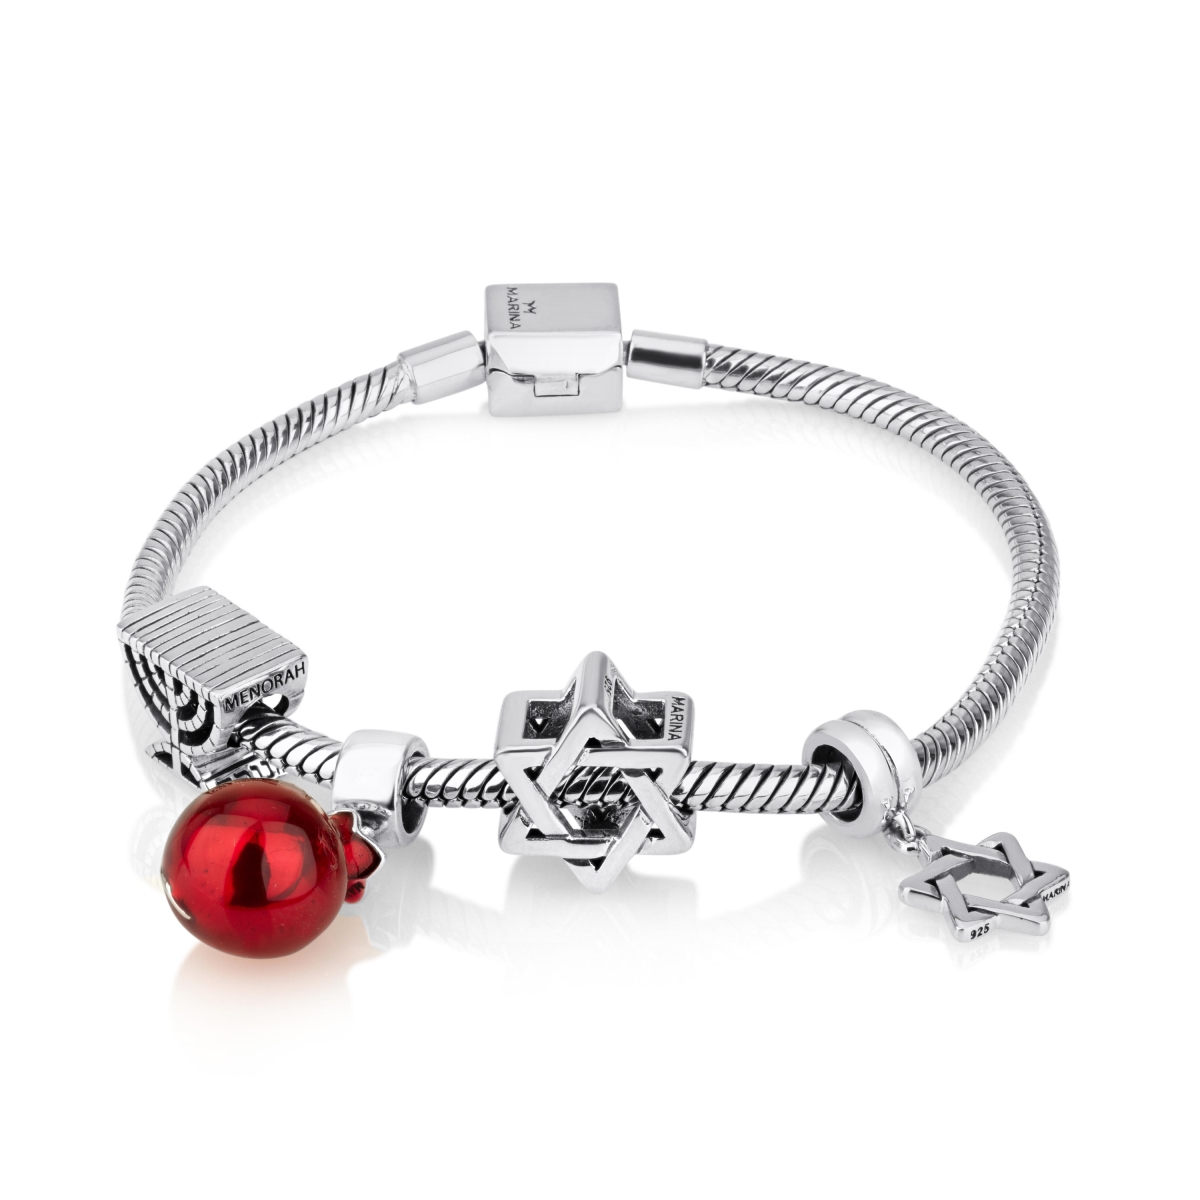 Marina Jewelry Silver Charm Bracelet with 4 Jewish Charms - 1